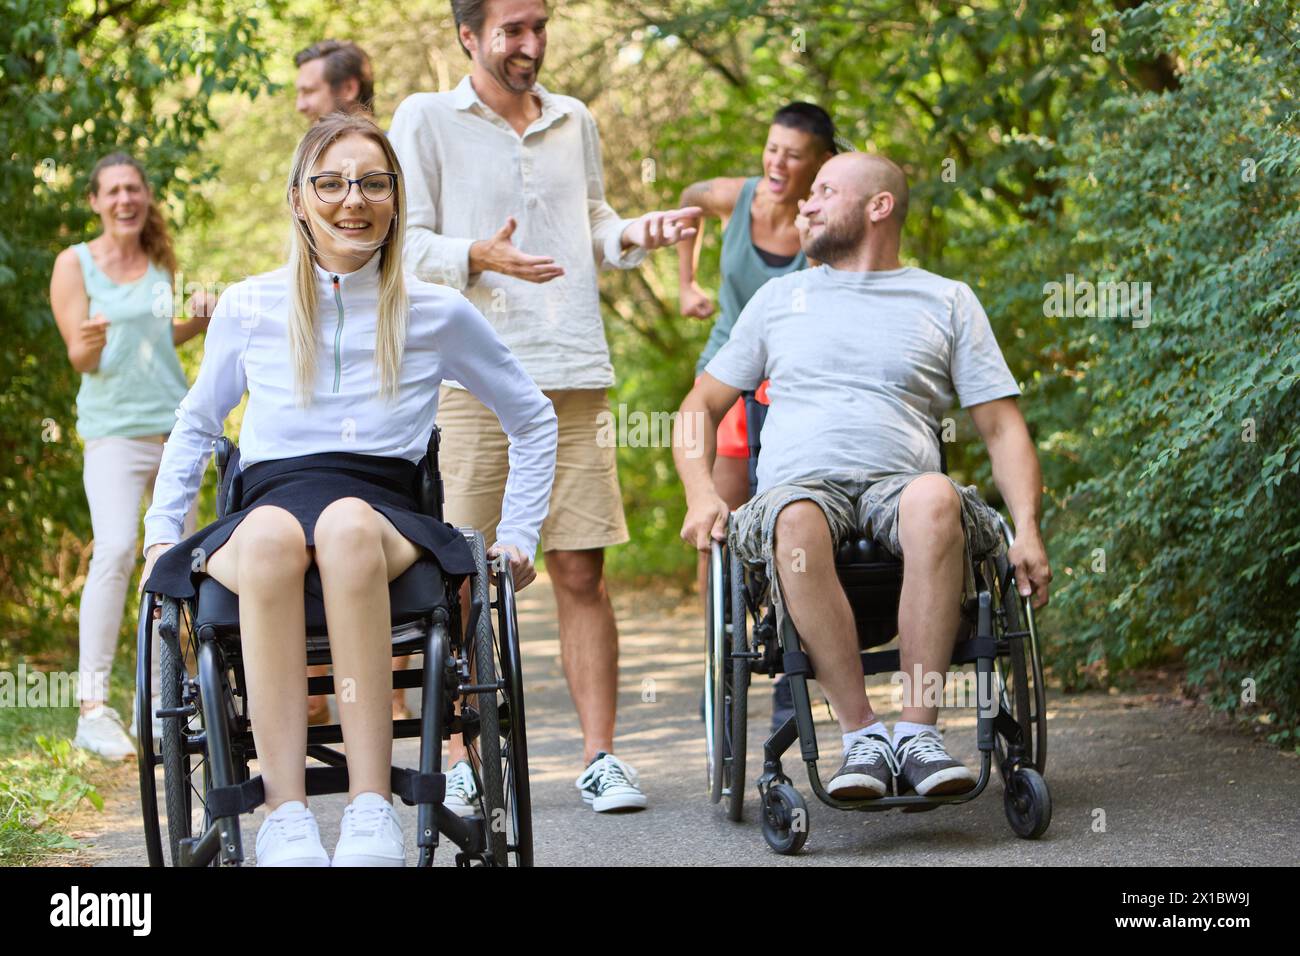 Un gruppo eterogeneo di persone, comprese persone su sedia a rotelle, trascorrono felicemente del tempo insieme in un parco. Foto Stock